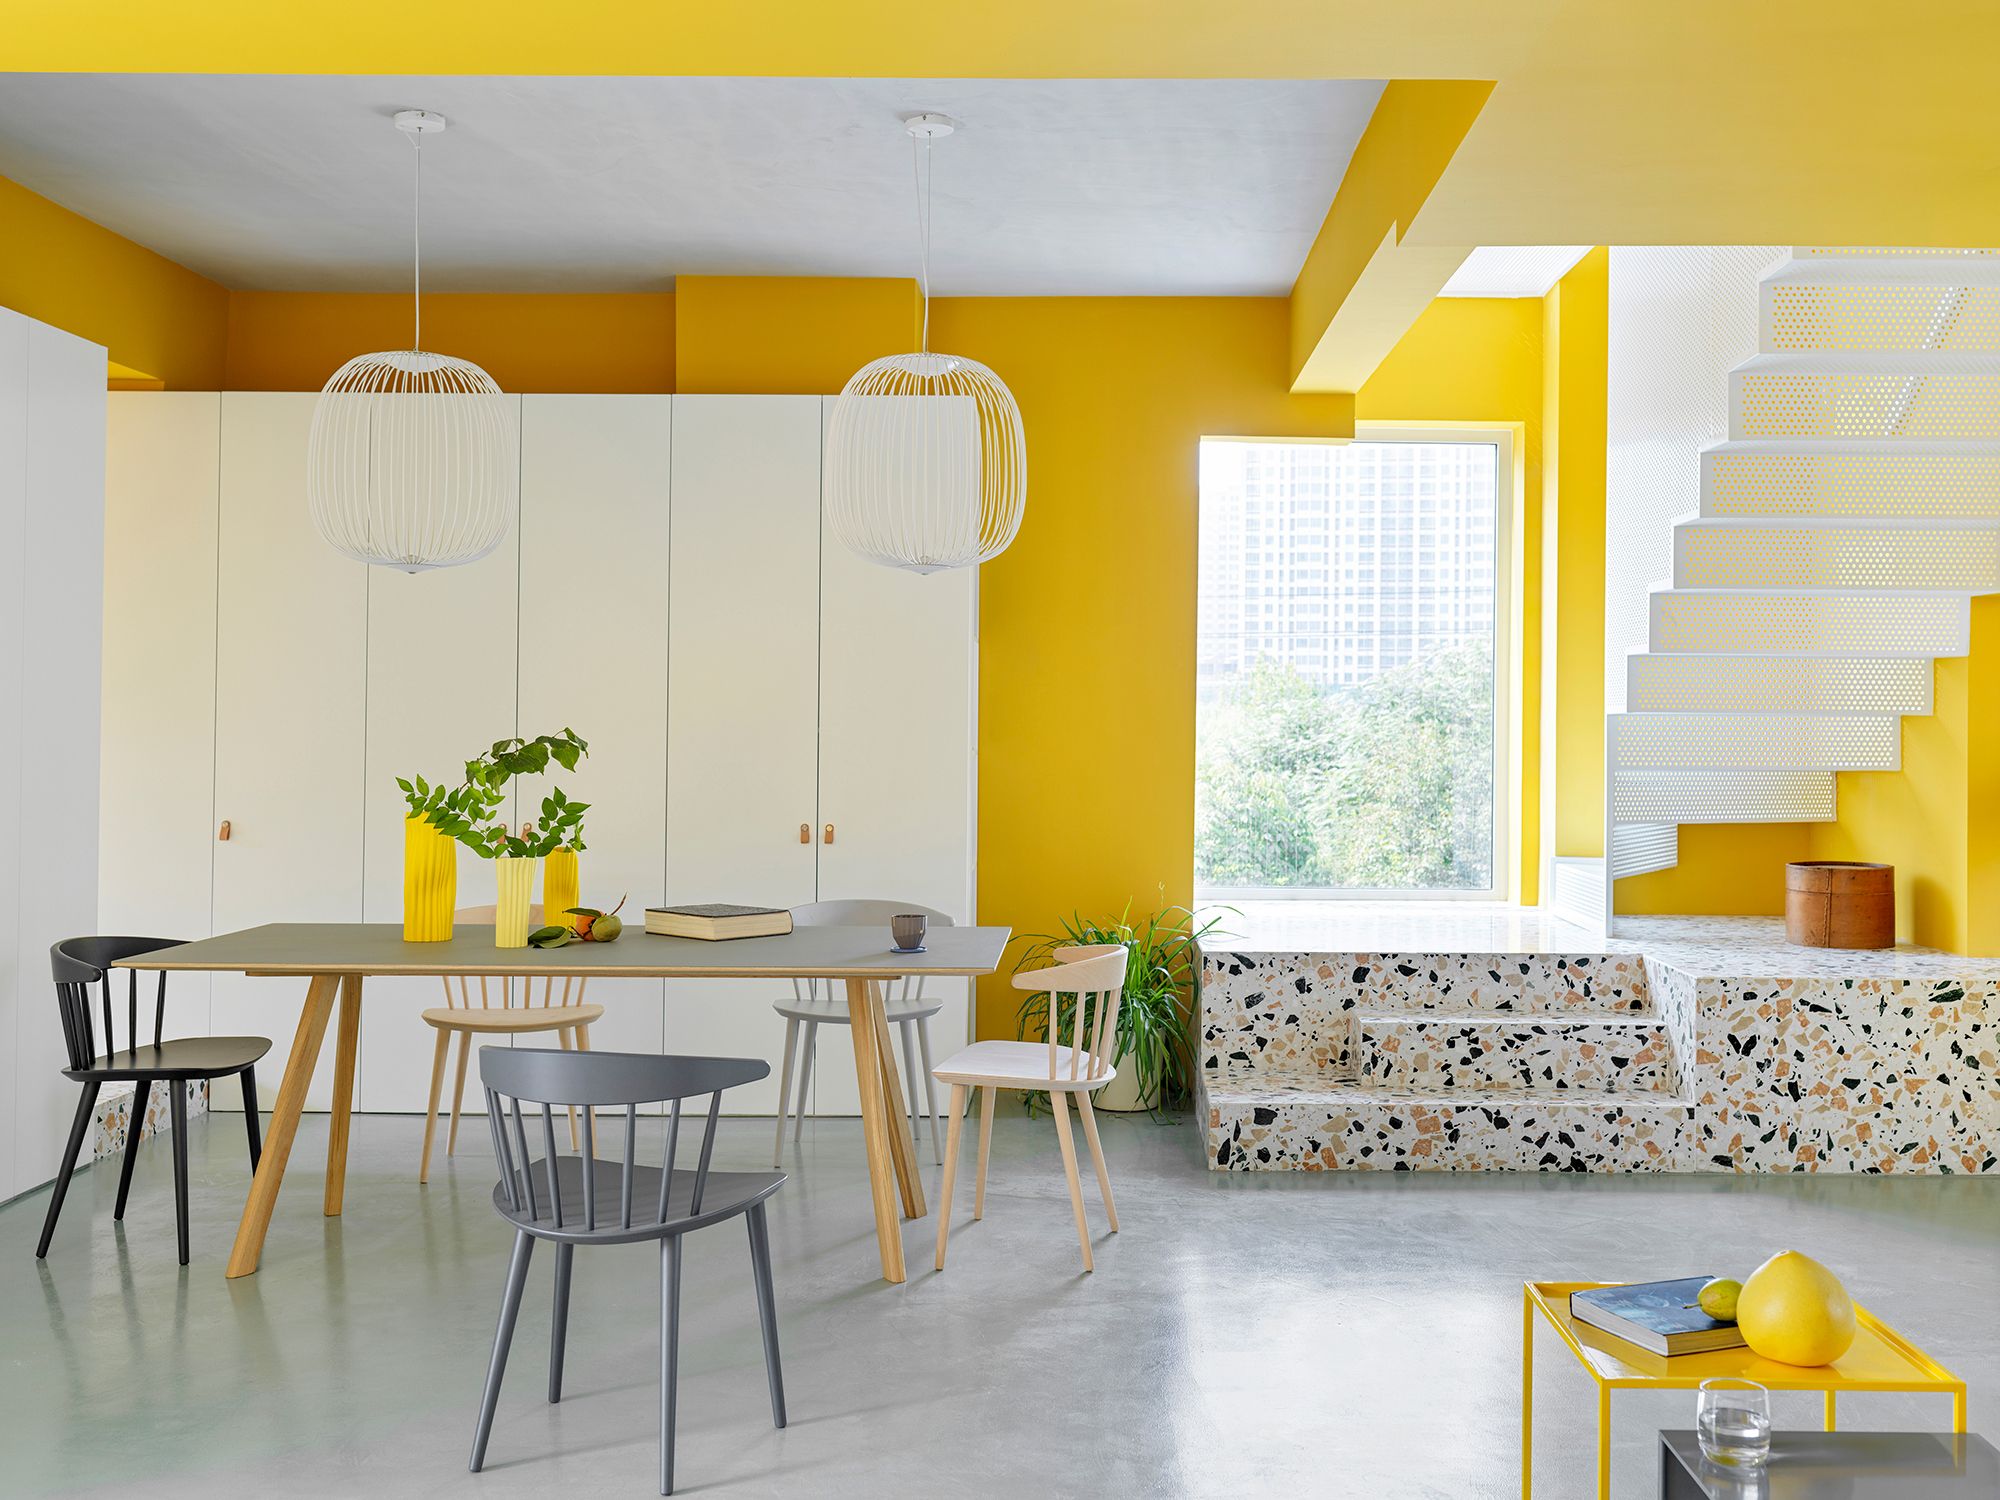 Un divertida casa con las paredes en amarillo - Casas